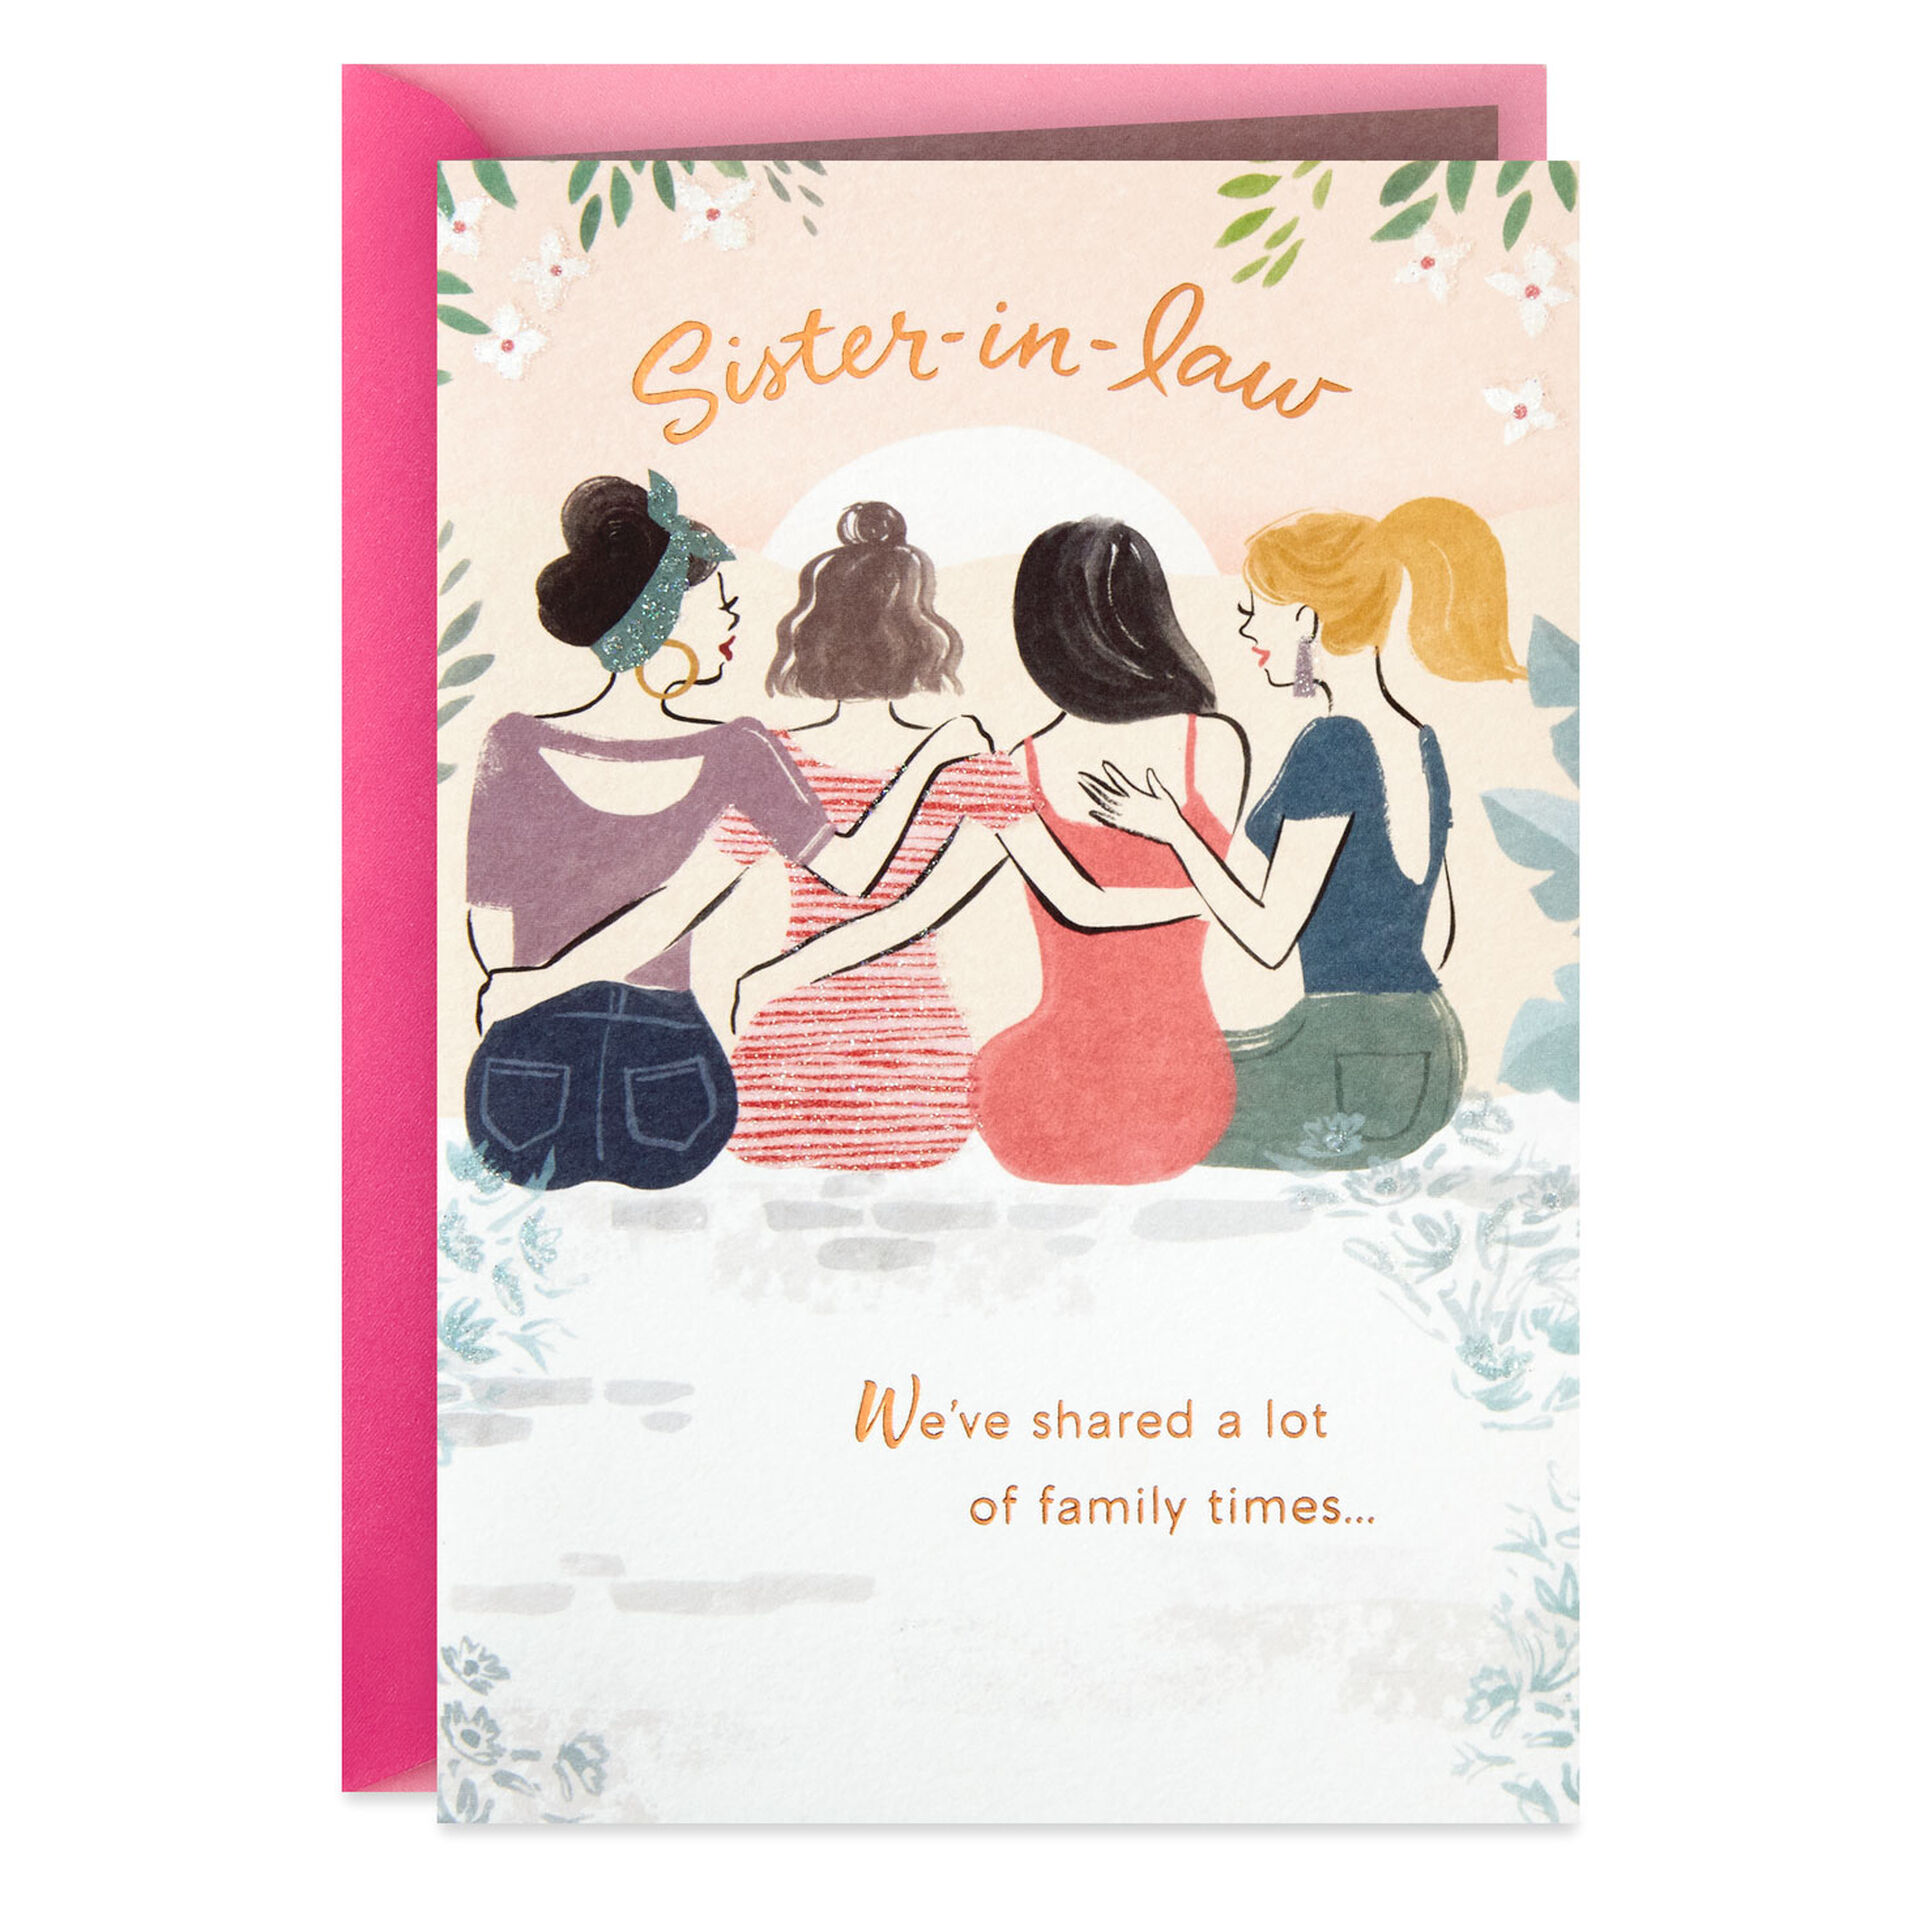 Women-Sitting-on-Wall-SisterinLaw-Birthday-Card_559FBD4314_01